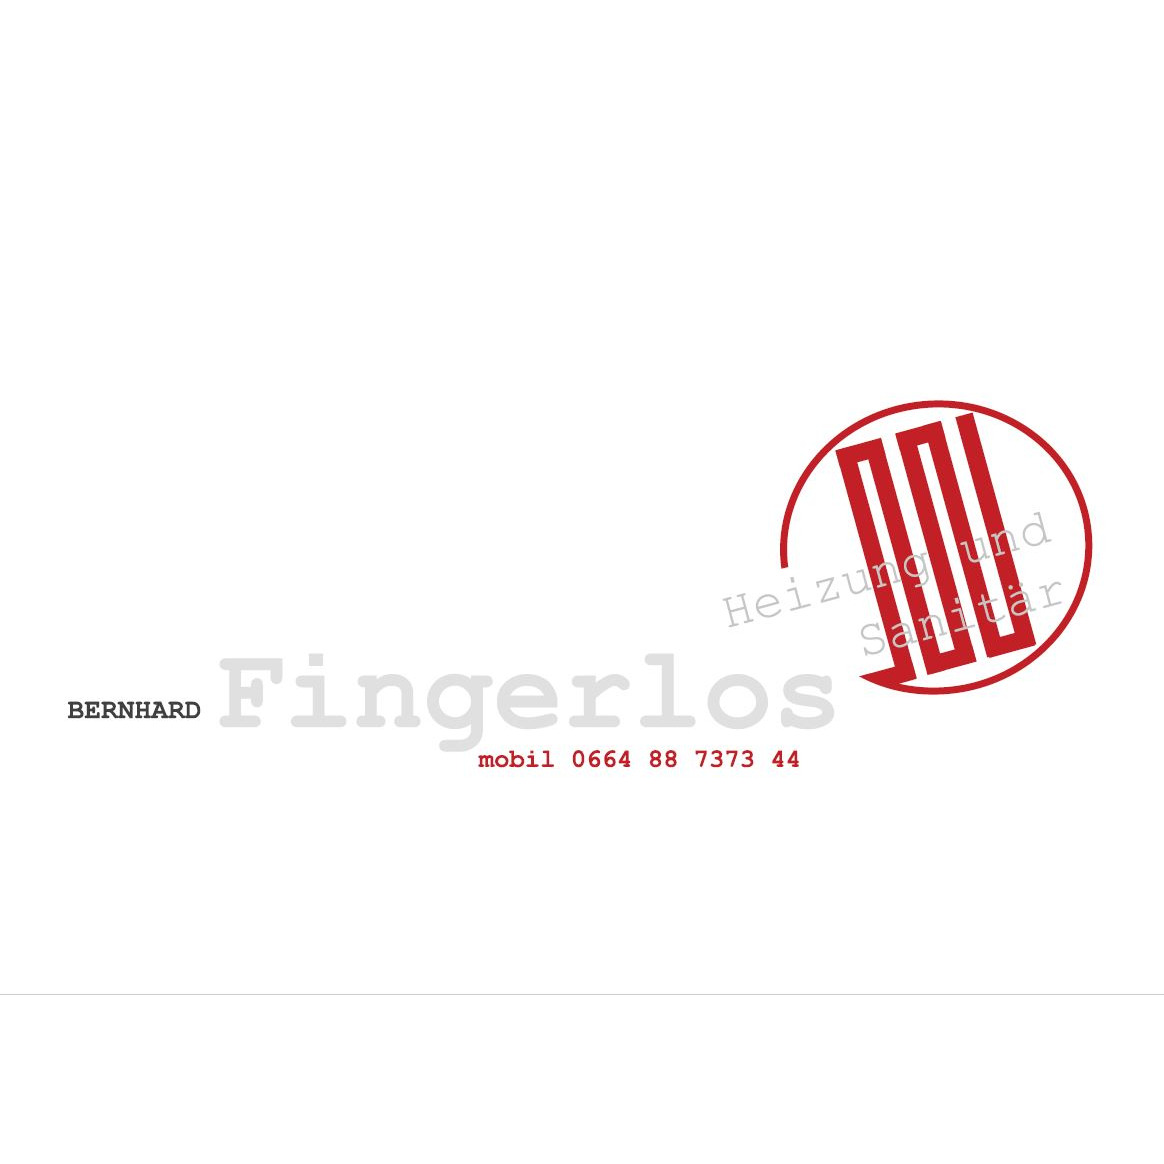 Fingerlos Bernhard Heizung & Sanitär Logo